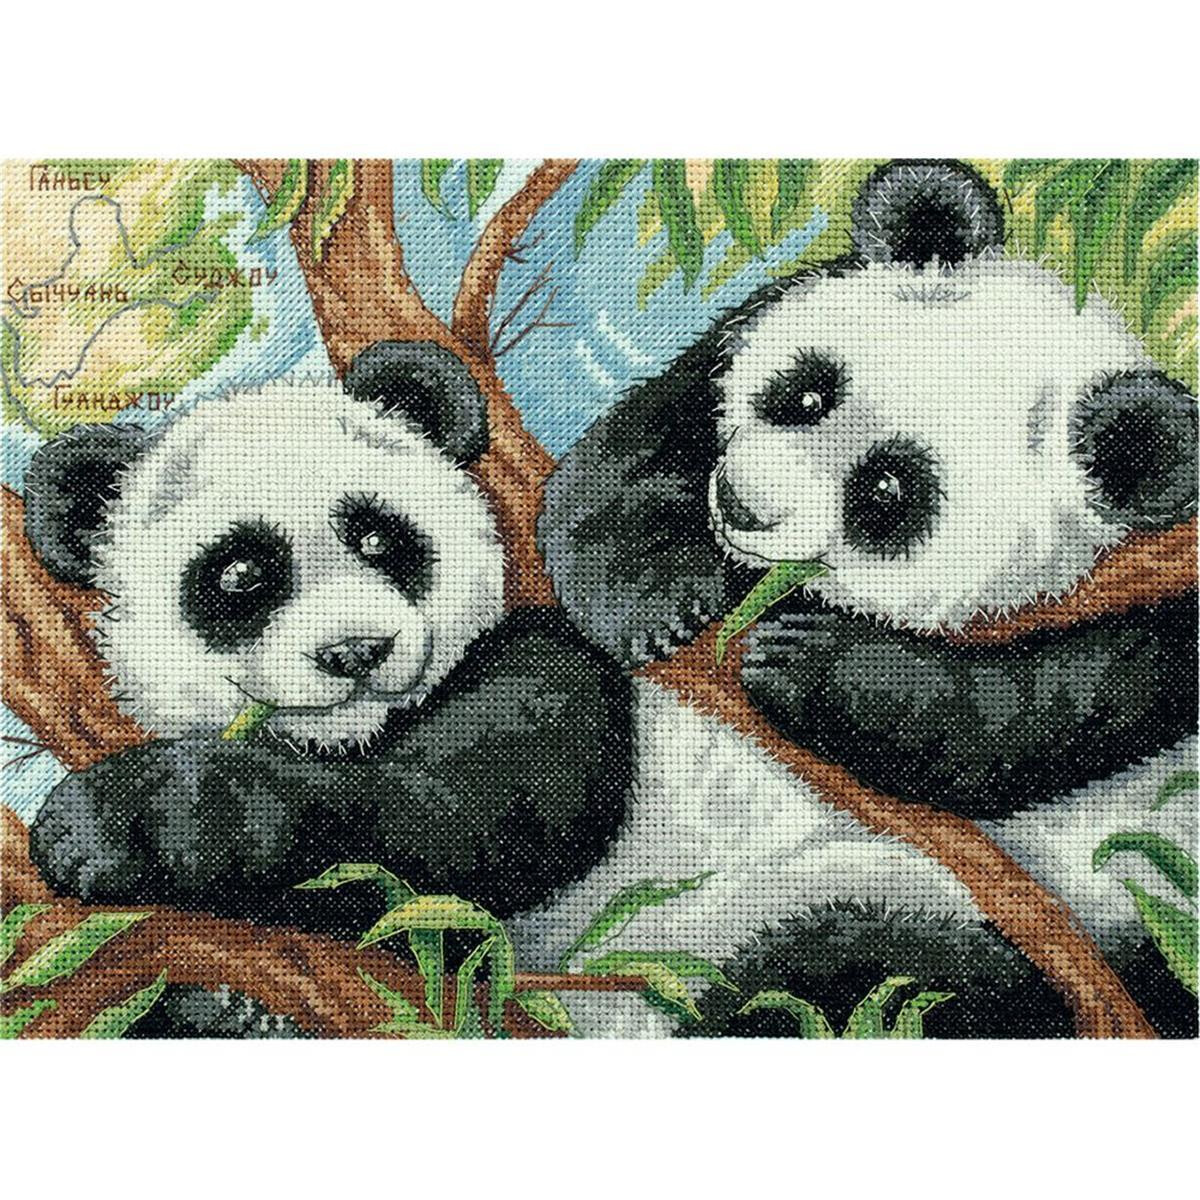 Panna Kreuzstichset "Pandas" 24x18cm,...